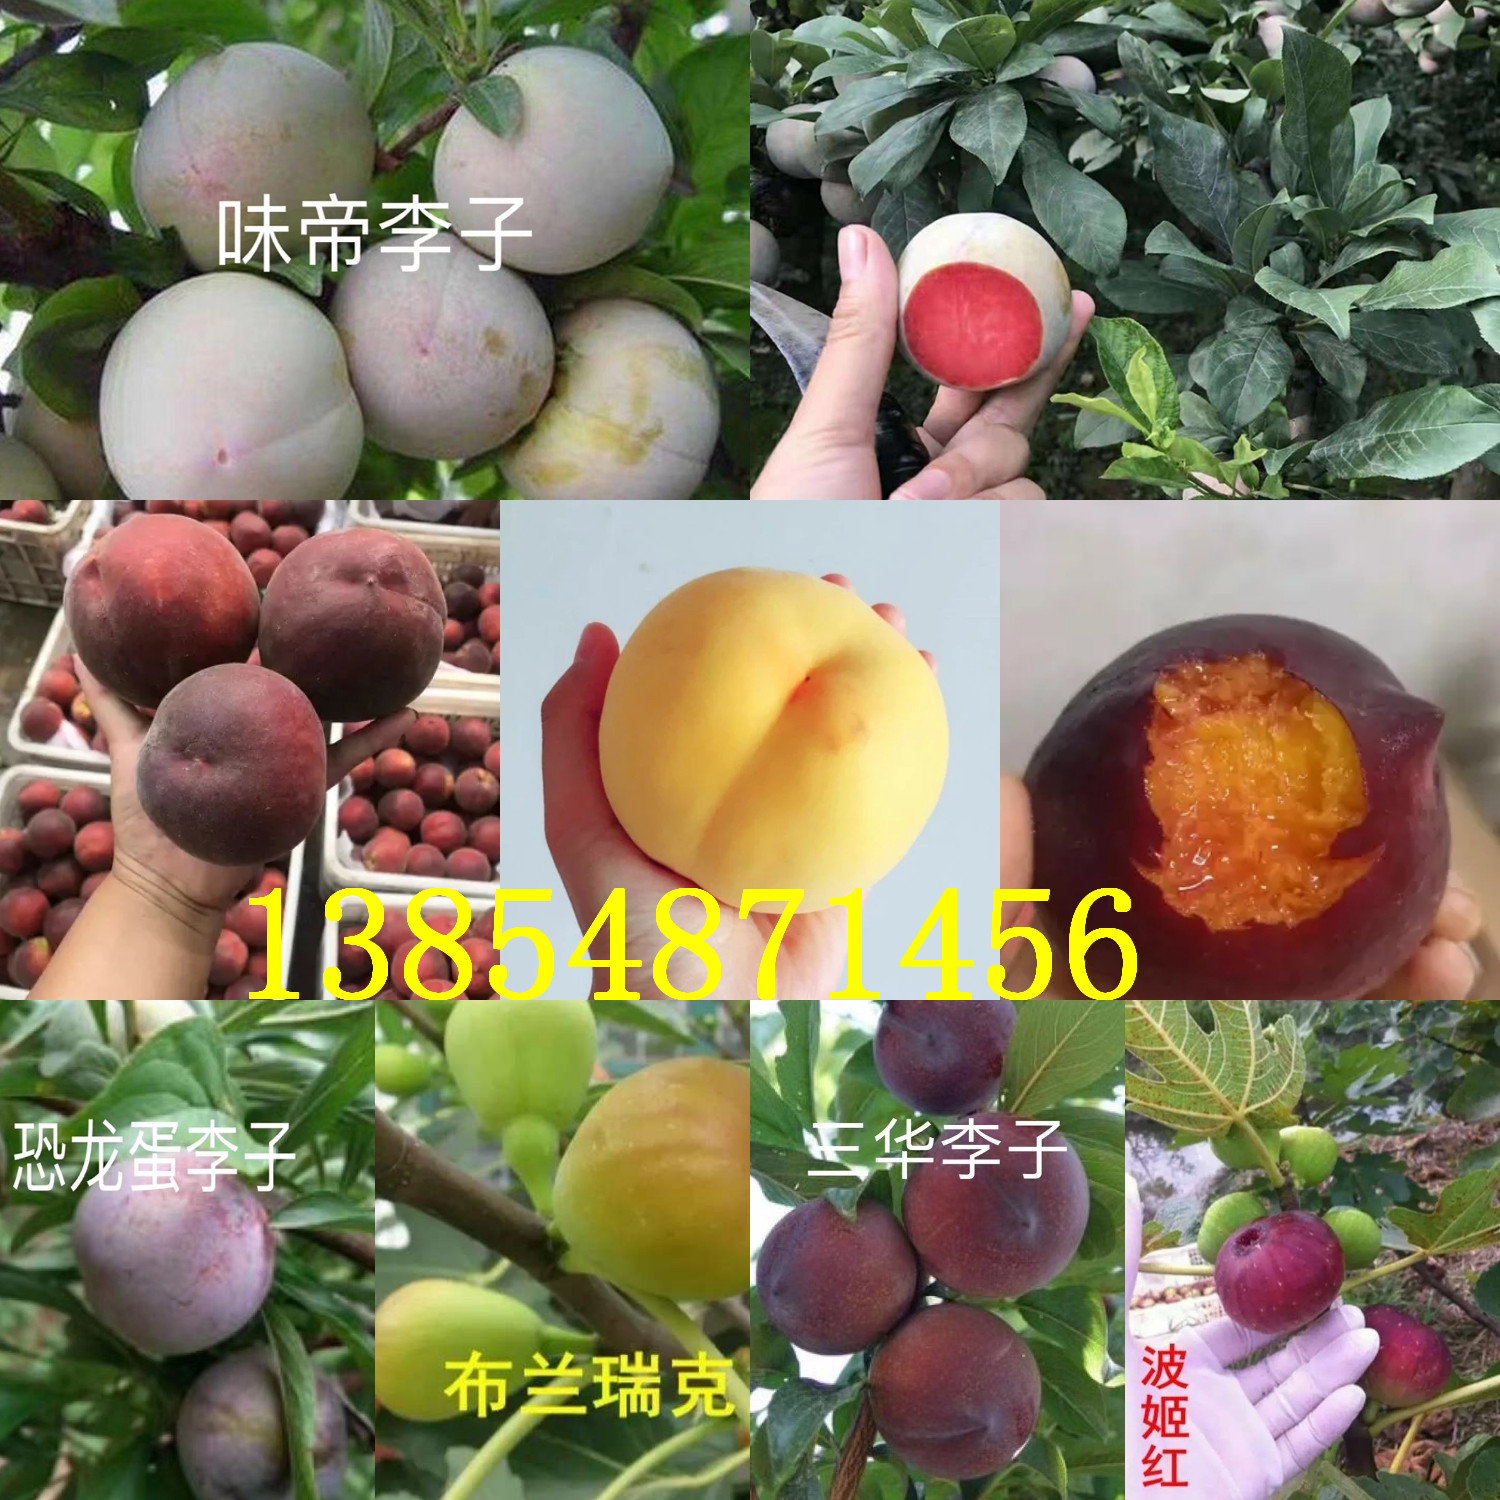 广东揭阳花椒树苗基地卖啥价格、果树苗哪里有售